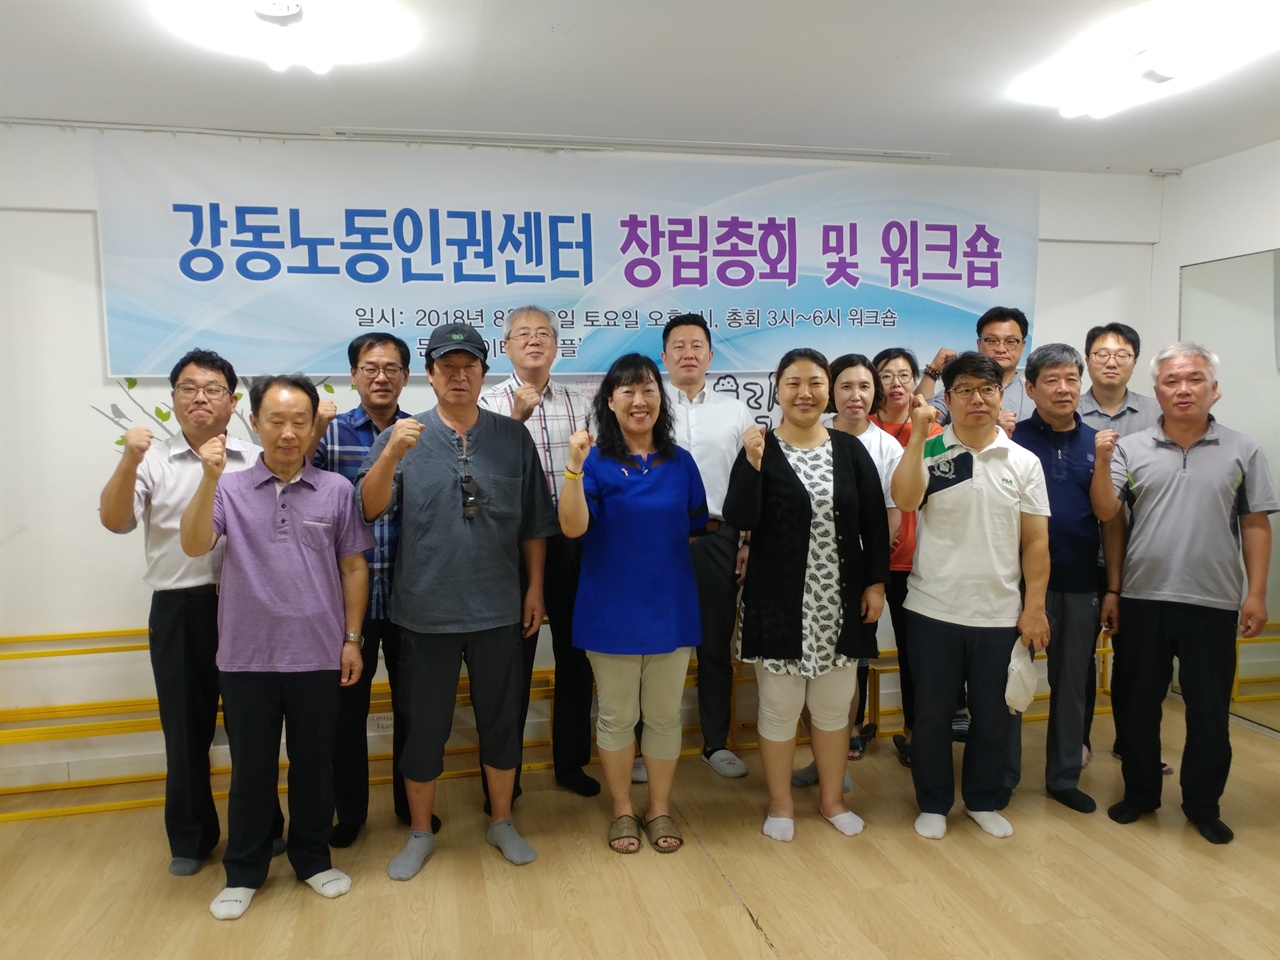 2018년 8월 18일 서울시 강동구 소재 '문화놀이터 와플'에서 개최된 강동노동인권센터 창립총회를 마치고 이 단체 성원들이 단체 촬영한 장면